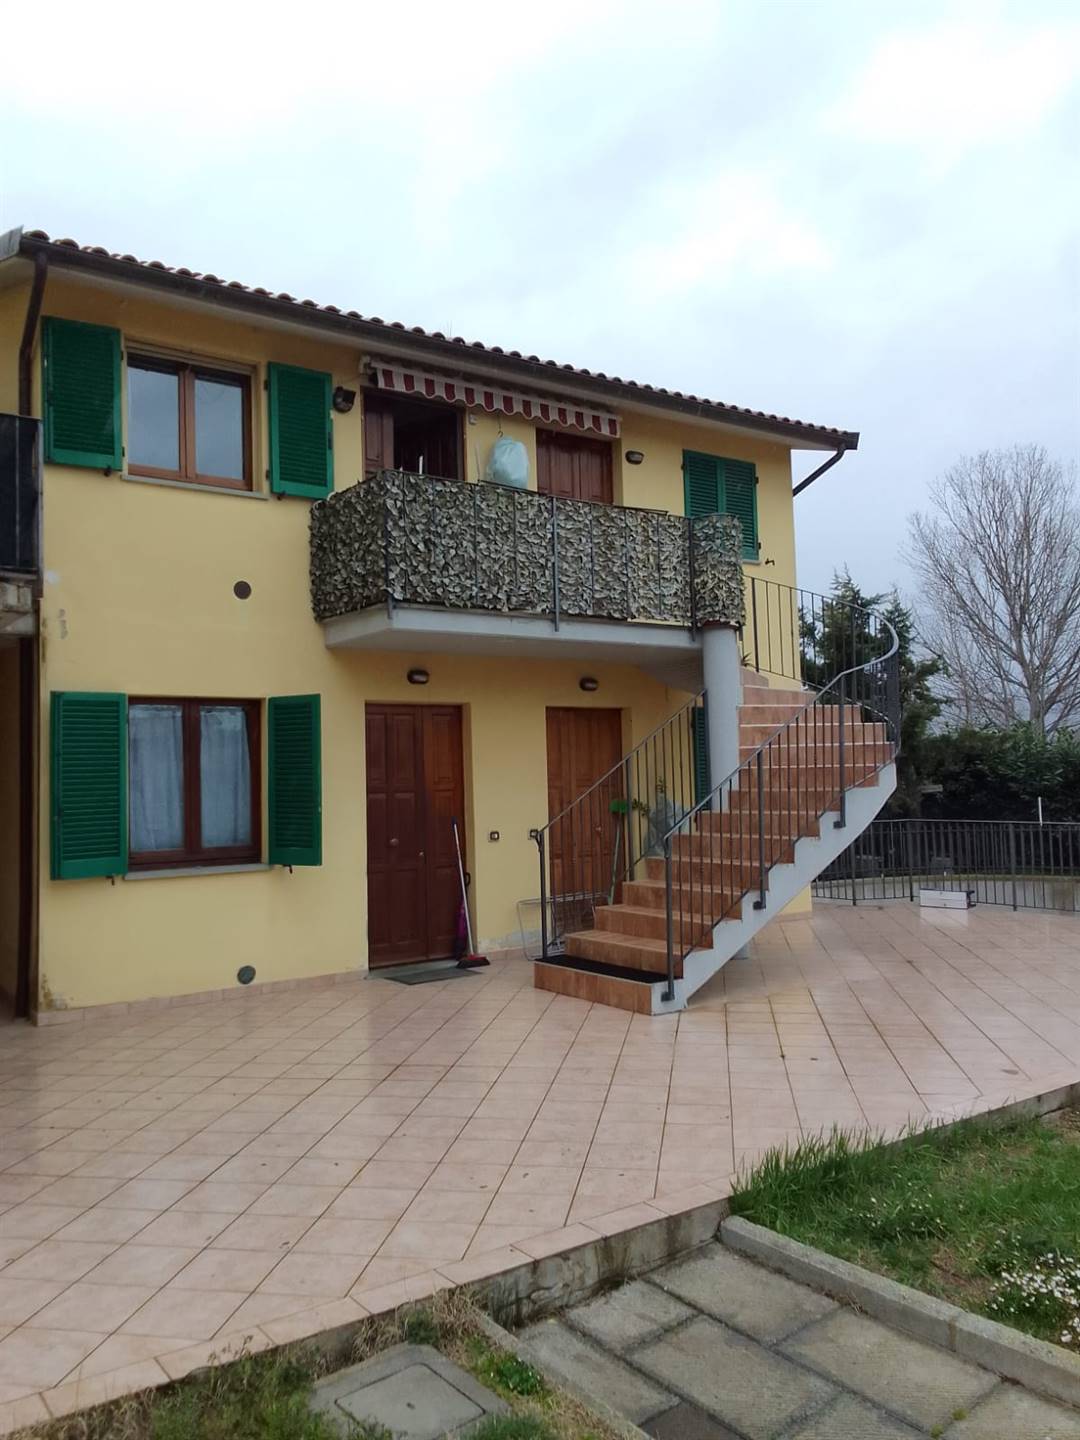 Appartamento in vendita a Castiglione del Lago, 2 locali, prezzo € 42.000 | PortaleAgenzieImmobiliari.it